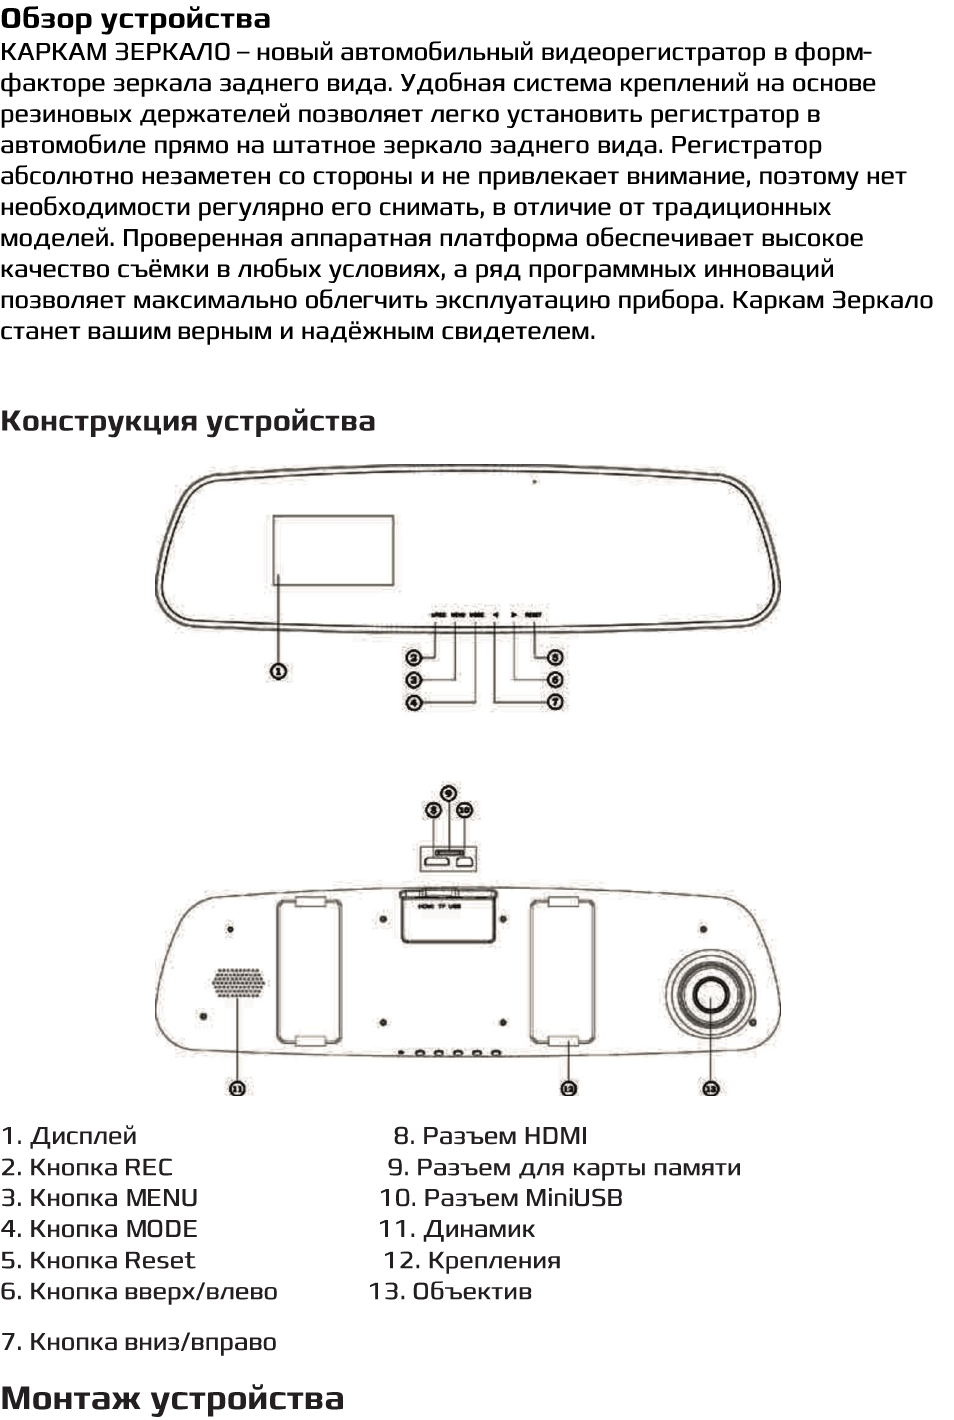 Инструкция видеорегистратора зеркало на русском